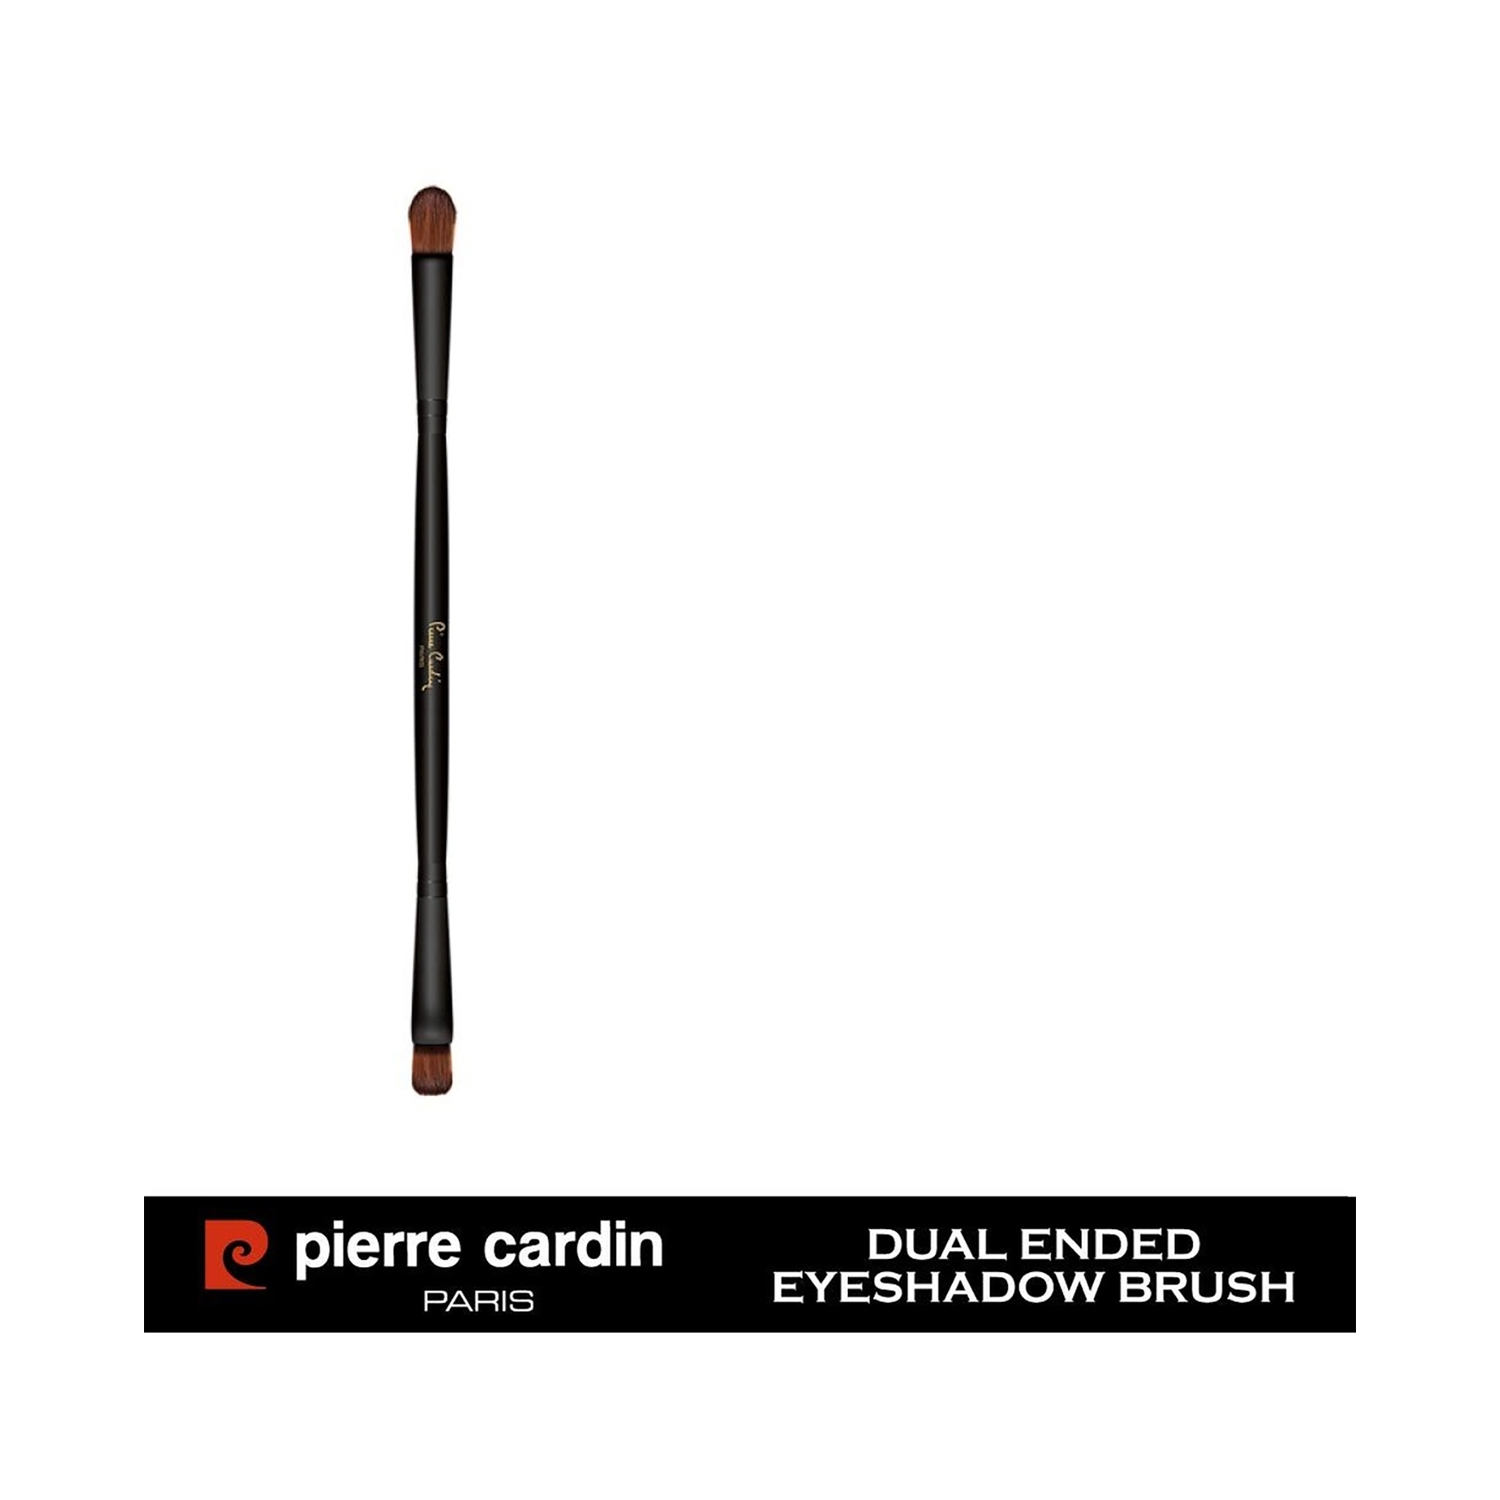 Pierre Cardin Paris | Pierre Cardin Paris Dual Ended Eyeshadow Brush